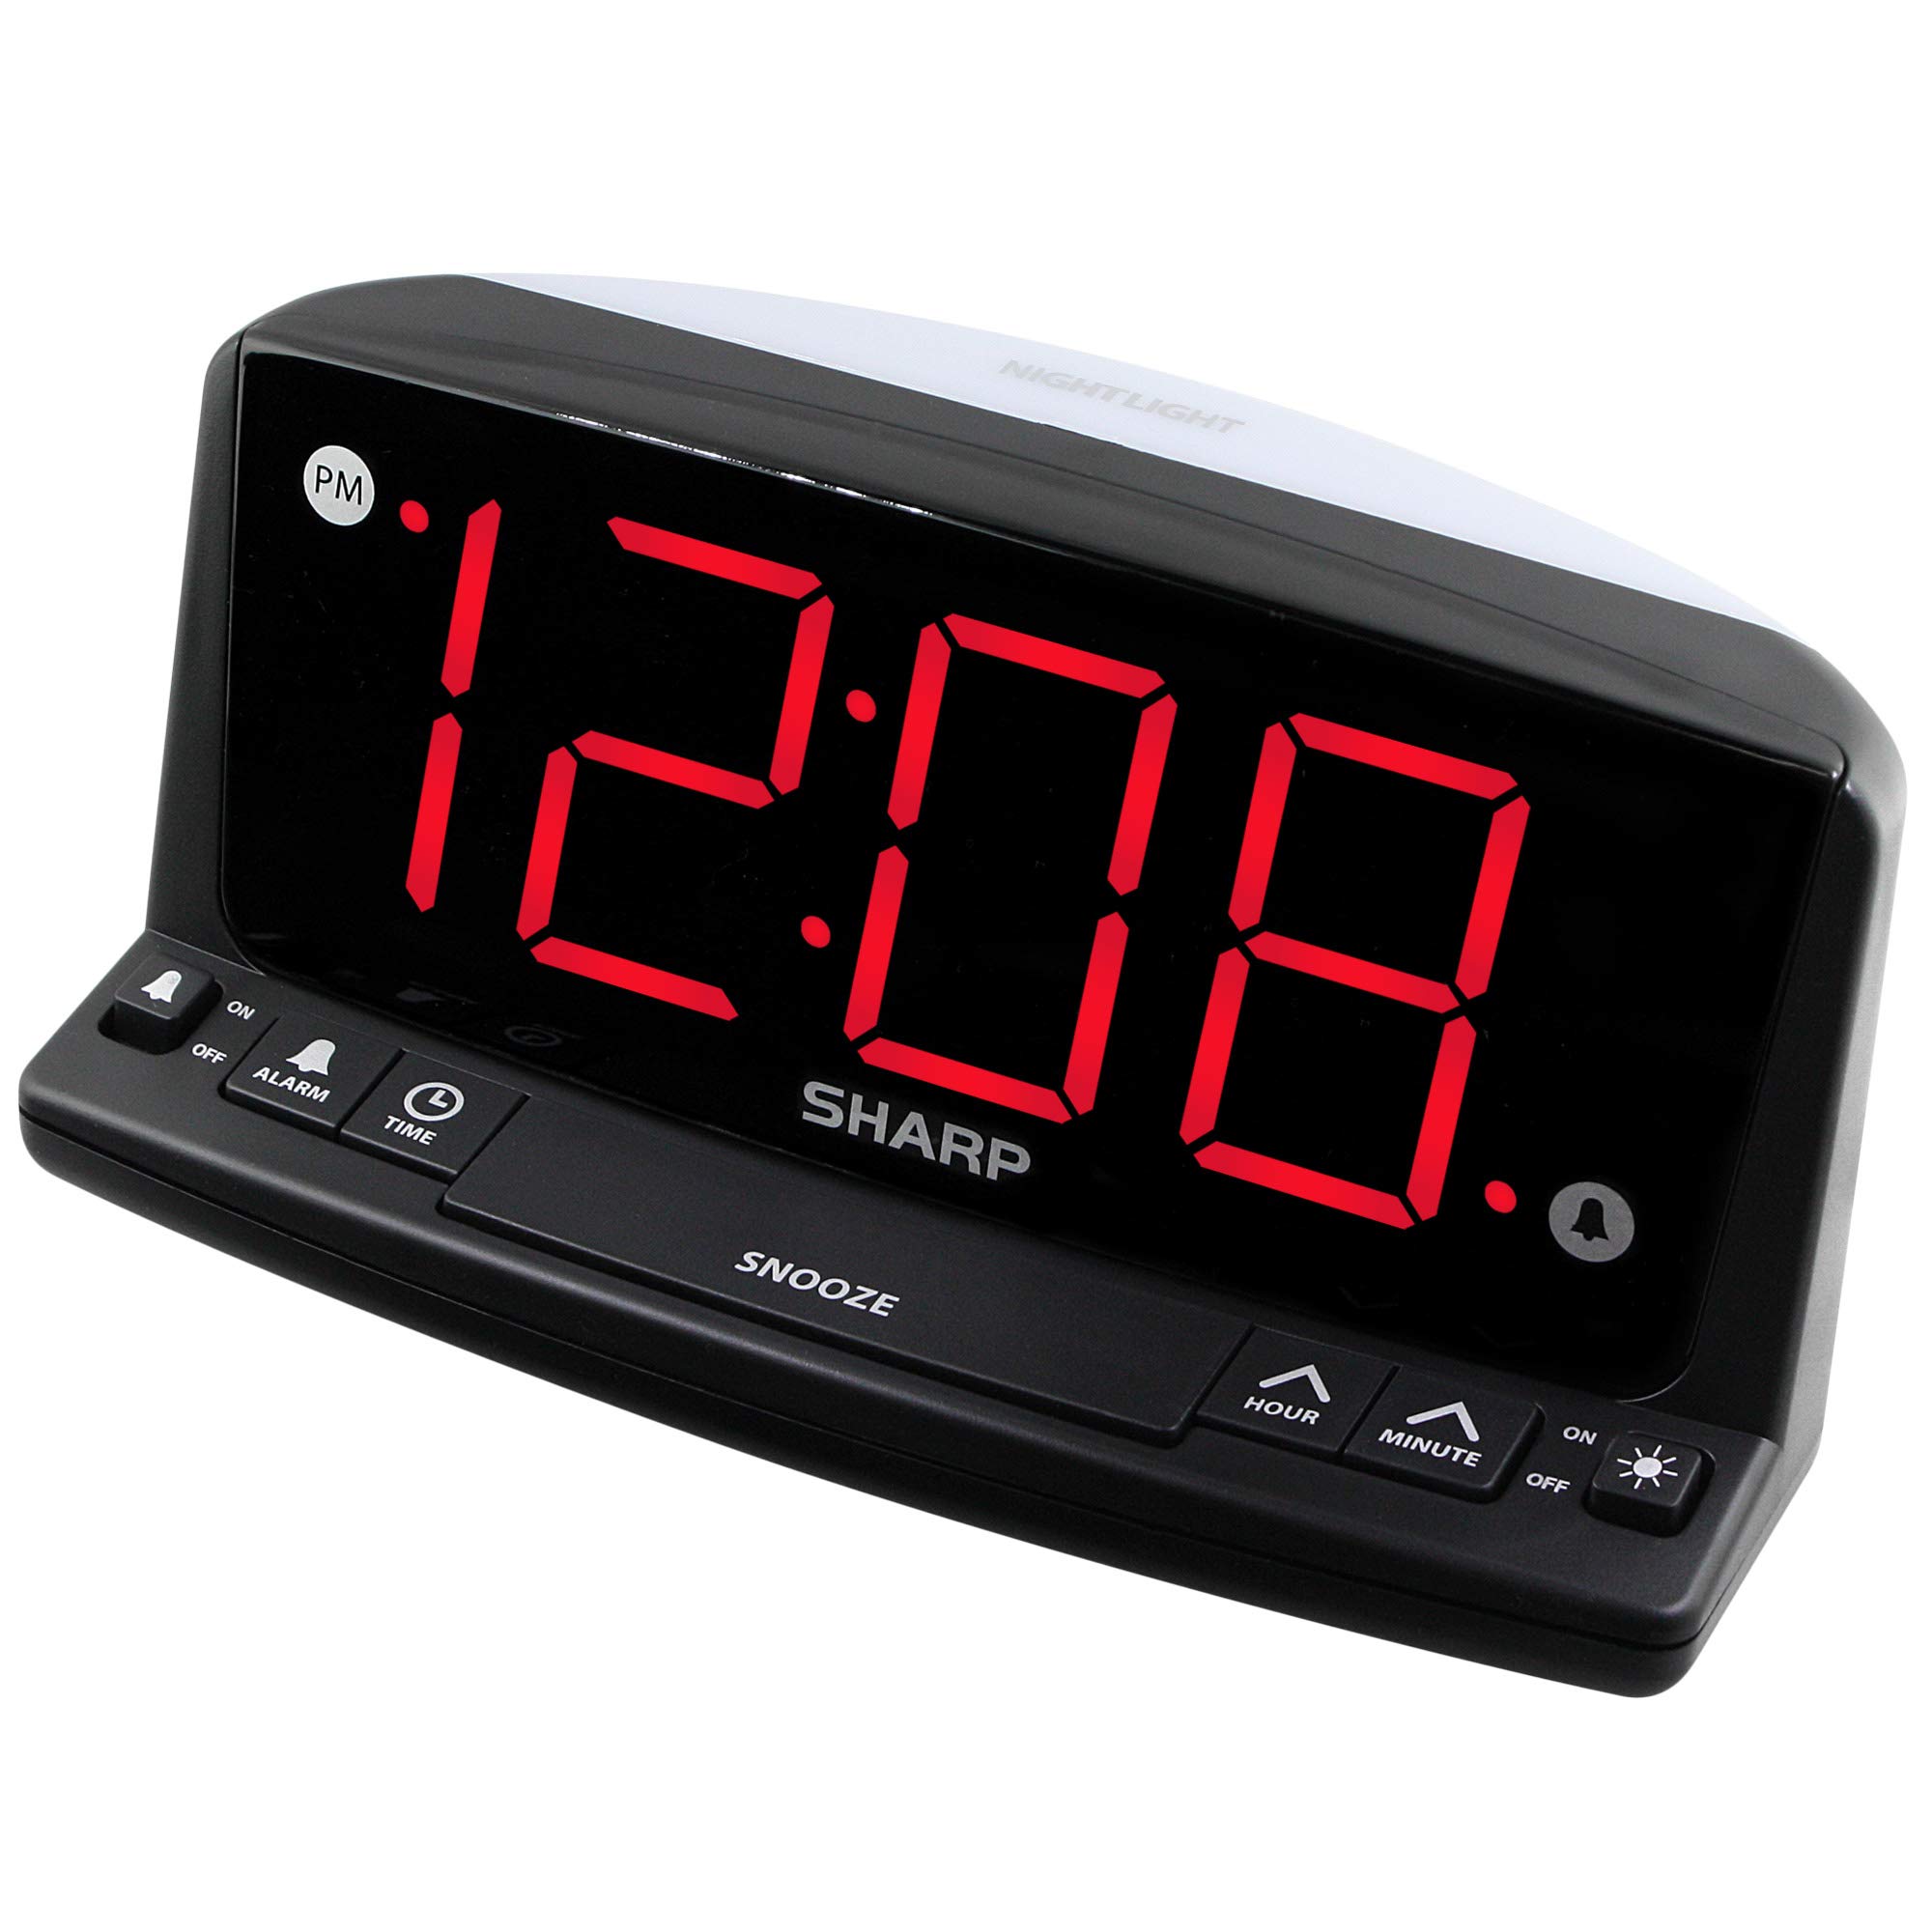 SHARP LED Digital Alarm Clock